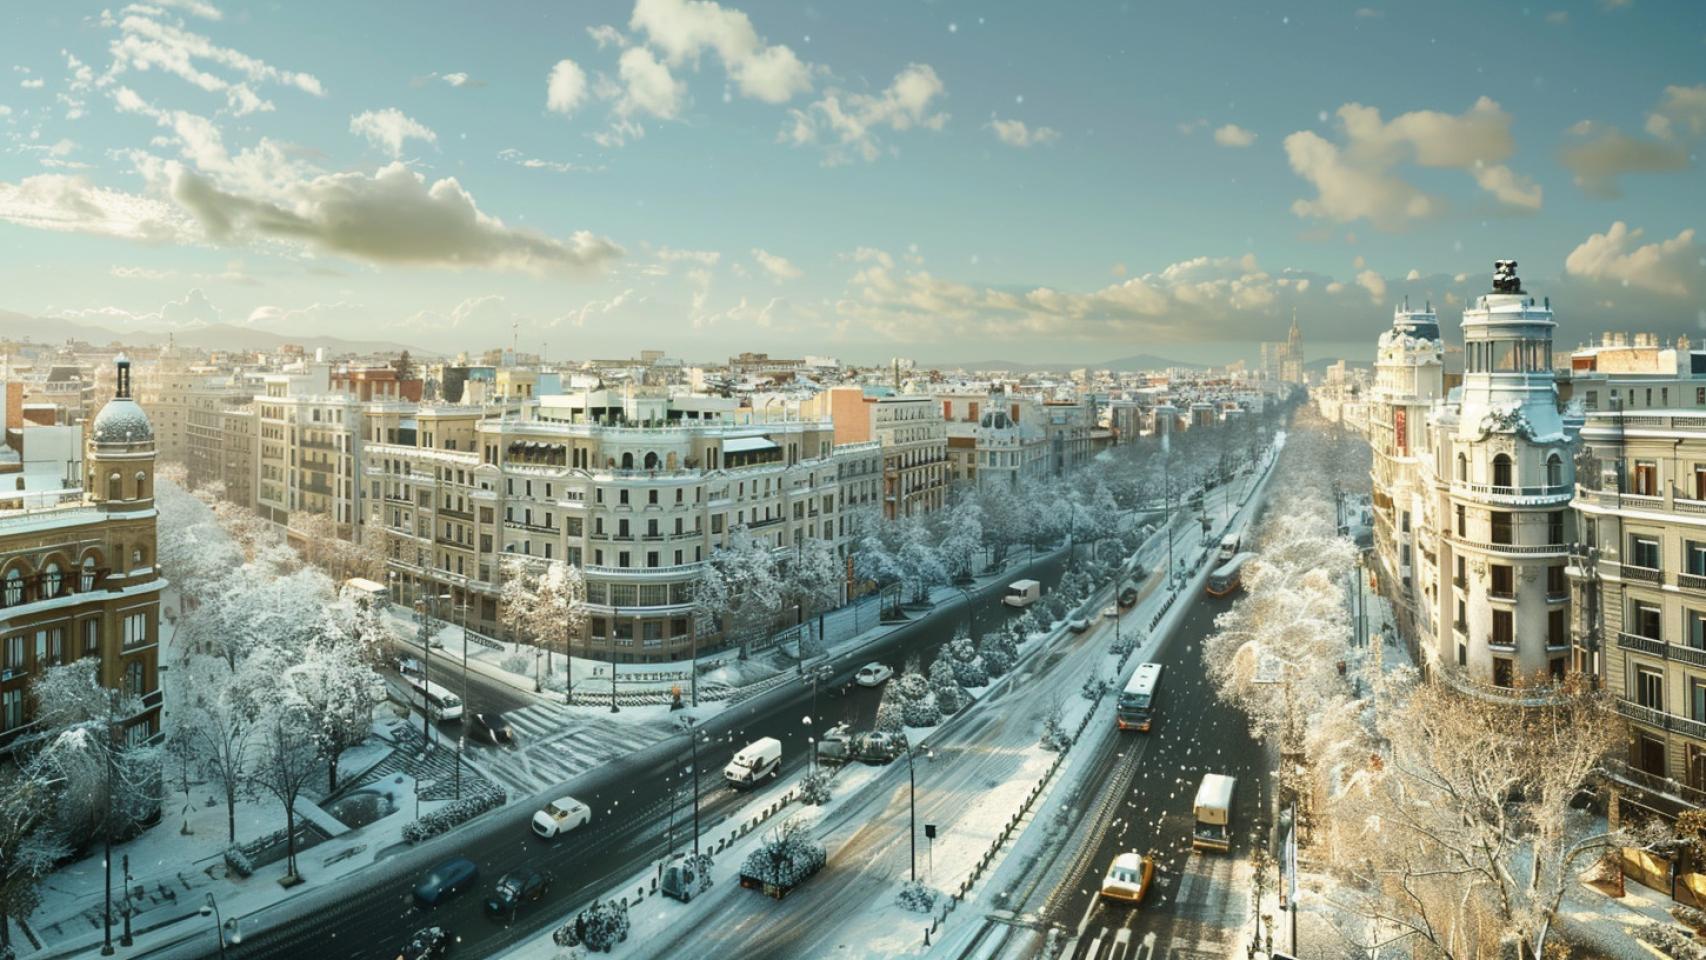 La ciudad de Madrid con nieve. (Imagen generada con IA)